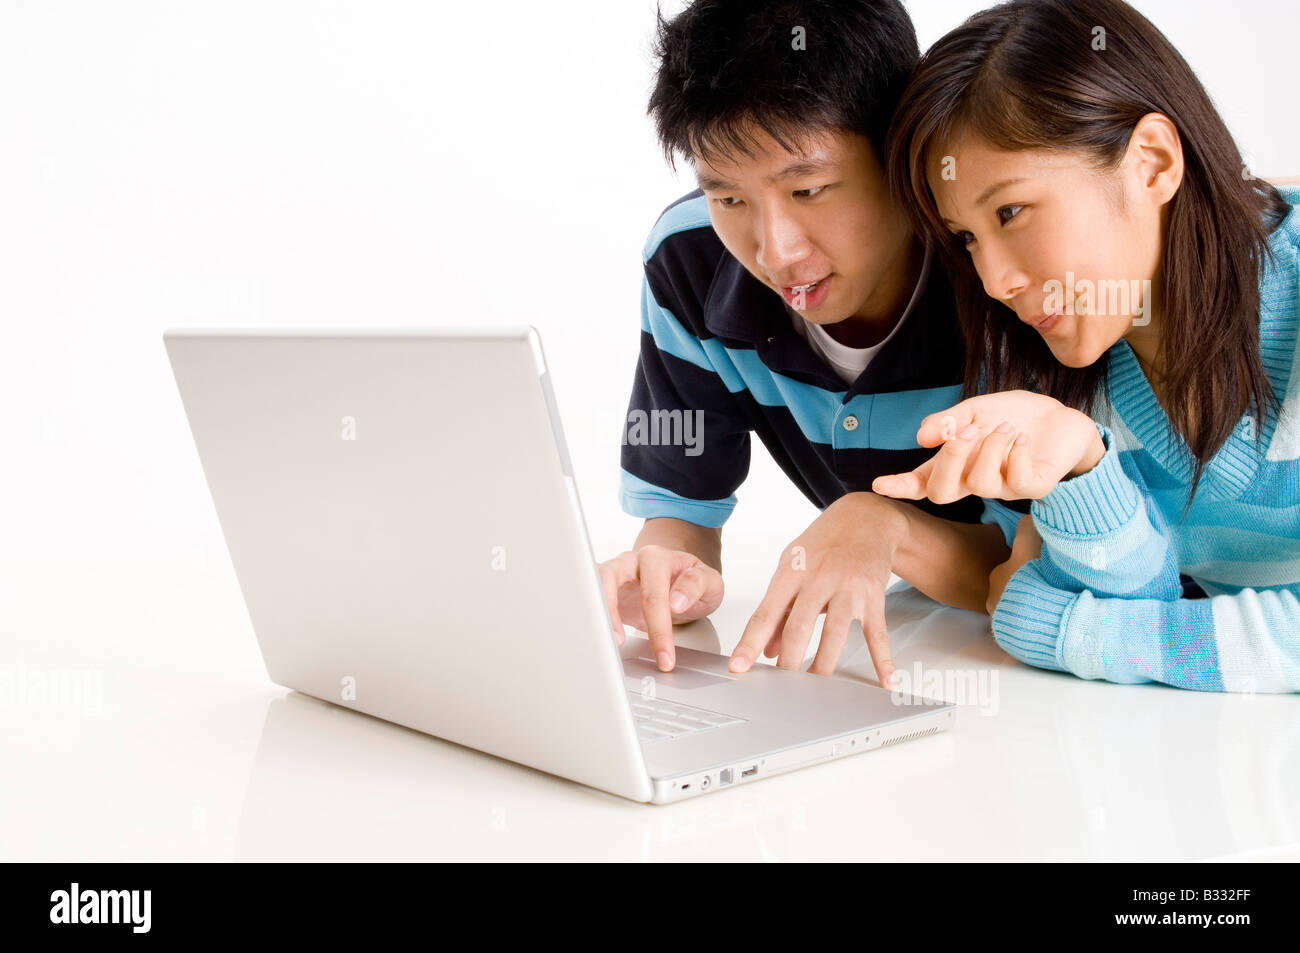 Un jeune couple se trouvant sur le plancher à l'aide d'un ordinateur portable Banque D'Images